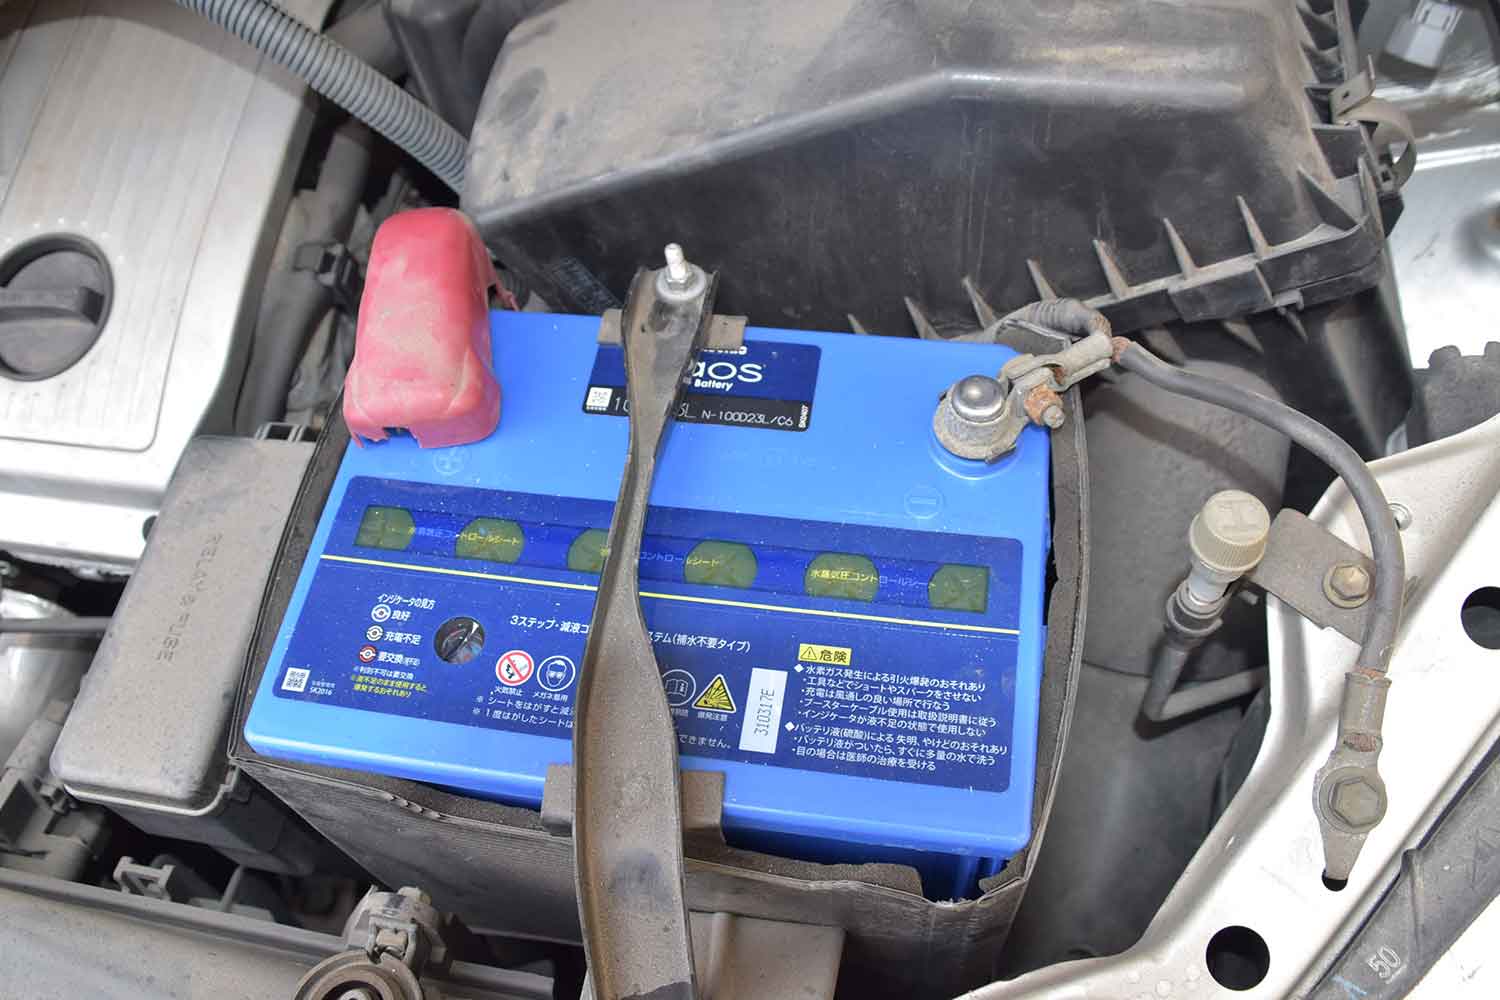 パナソニック製の自動車用バッテリー「caos（カオス）」を搭載している写真